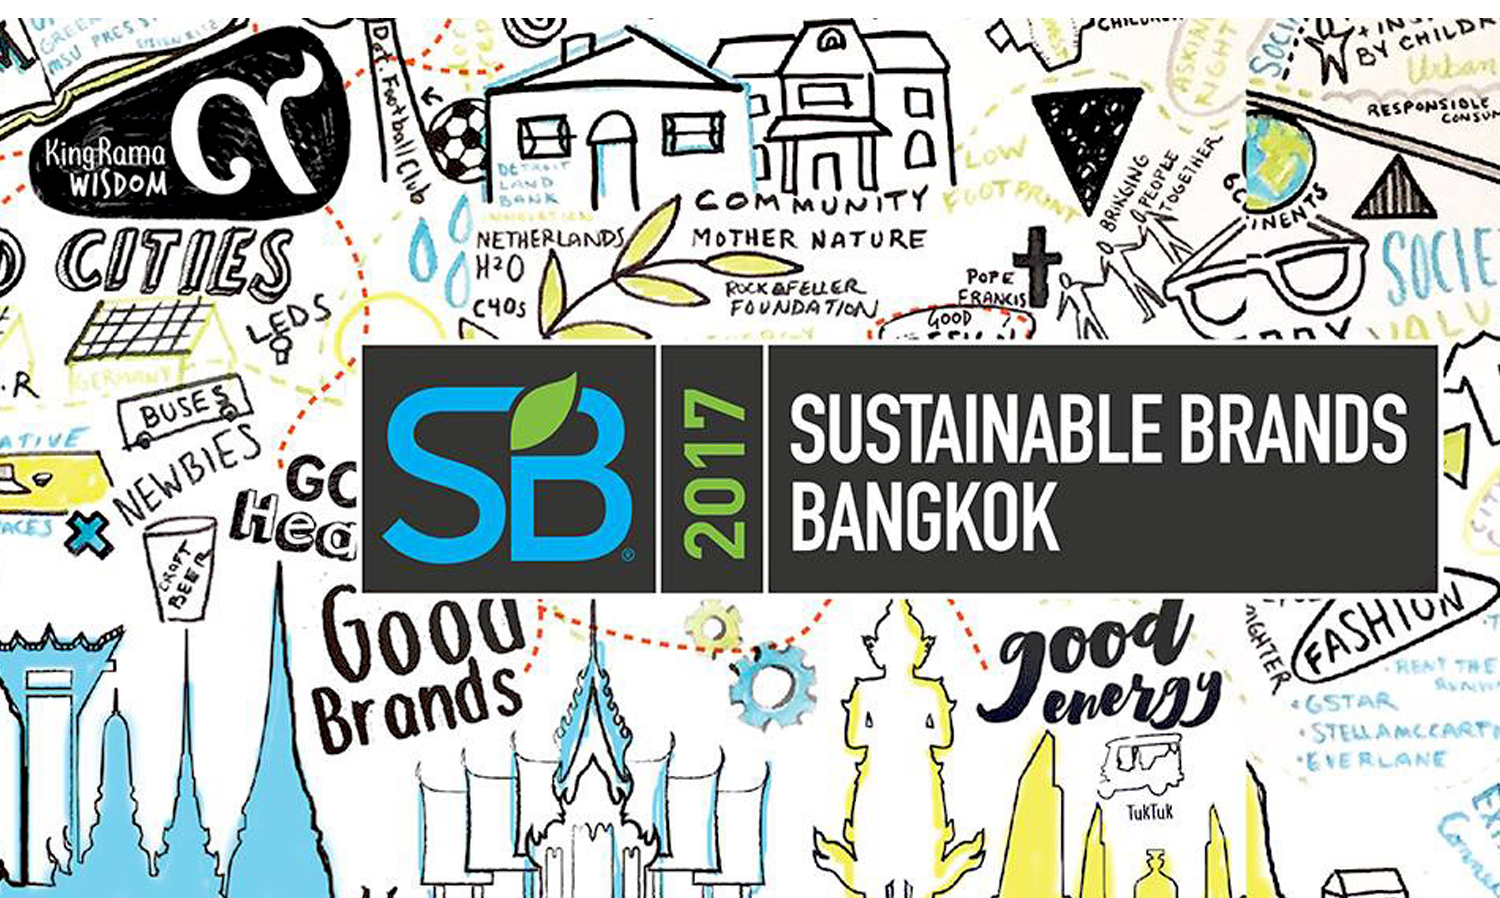 Sustainable Brands 2017 Bangkok ร่วมกับเอสซีจีเปิดมุมมองของที่อยู่อาศัยแนวใหม่ ภายใต้แนวคิด “Redefining the Good Home” พร้อมพาชม “The NEST” โครงการต้นแบบบ้าน Smart Eco-Care